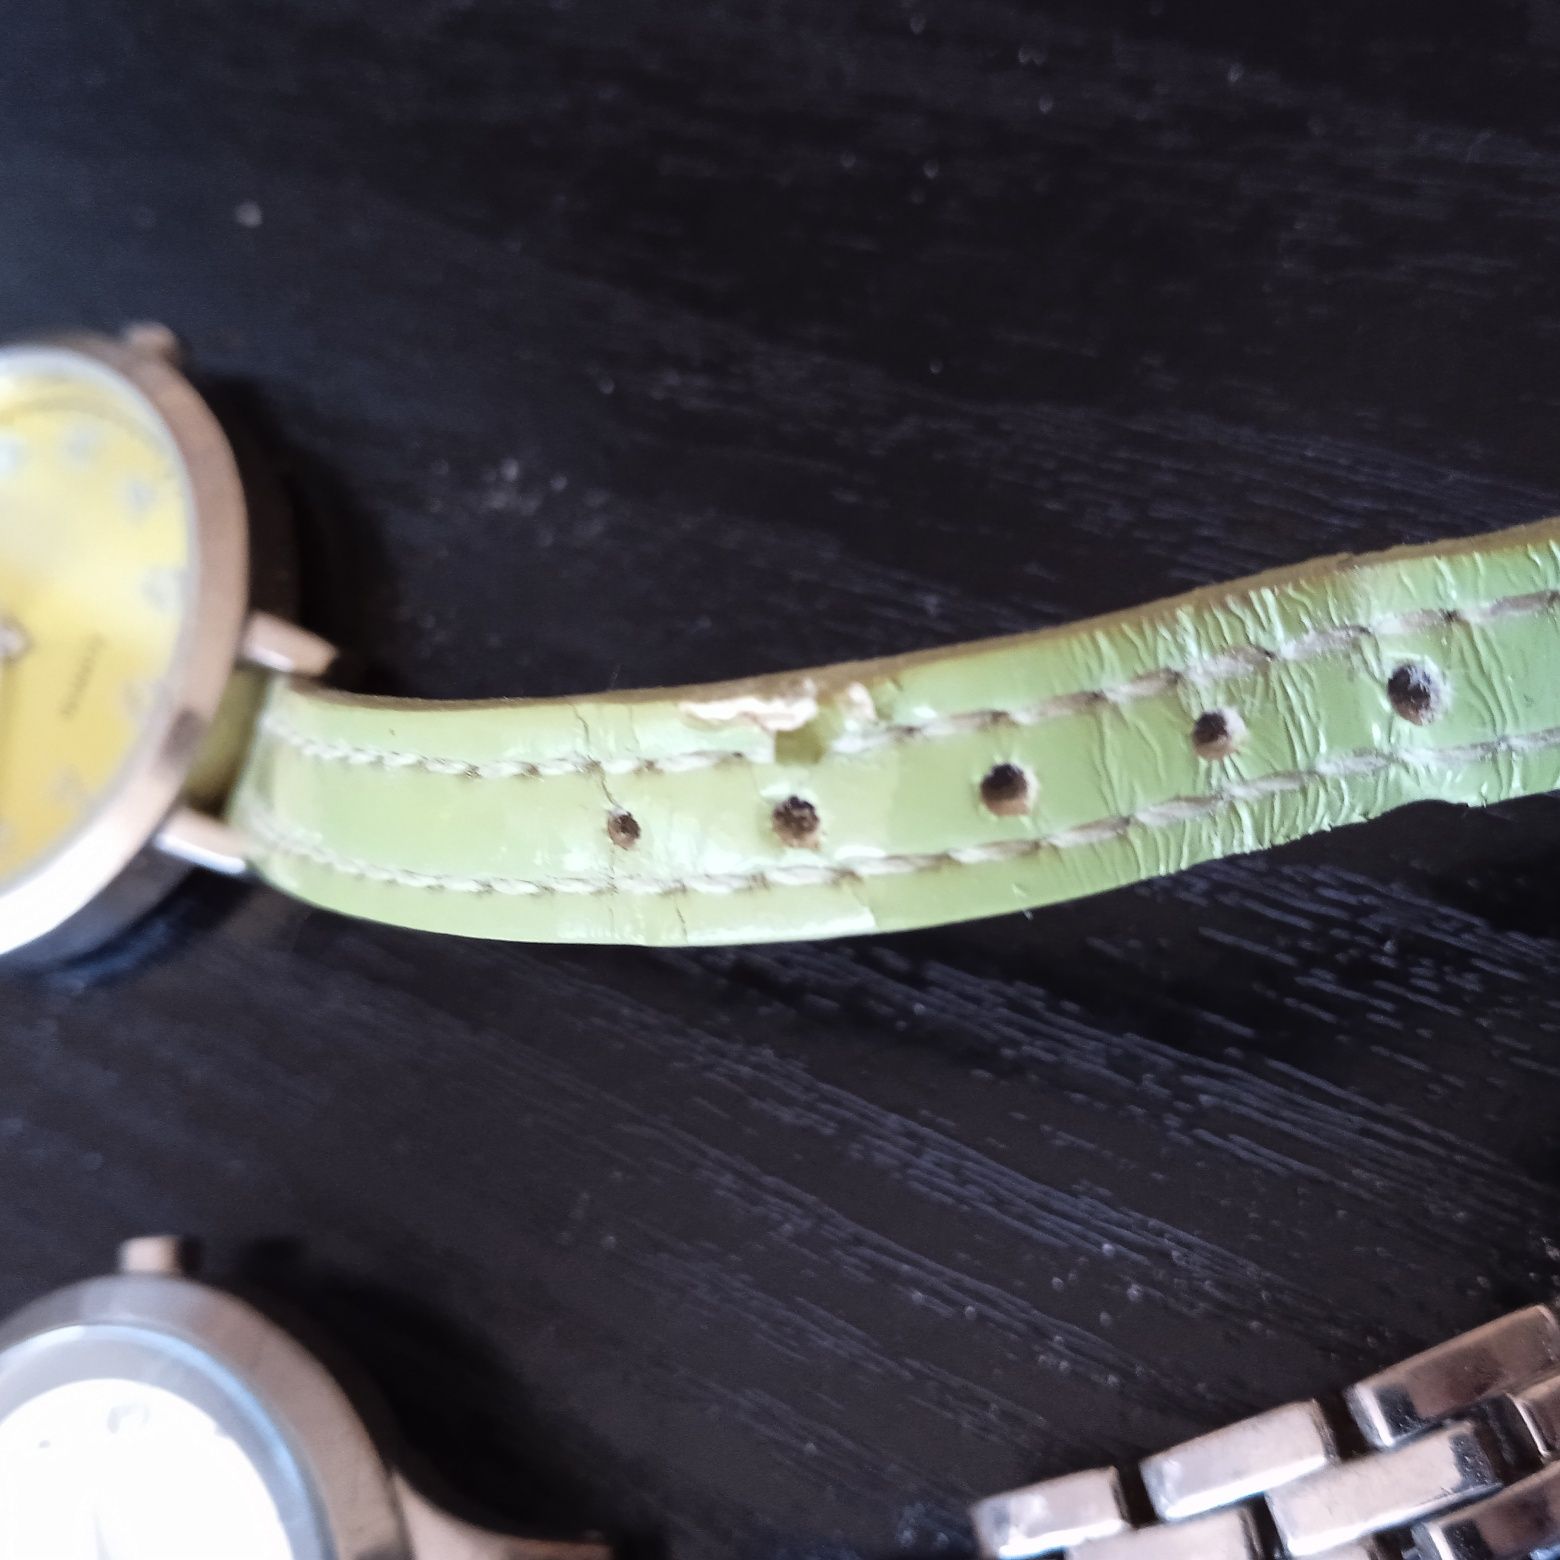 Zegarek na rękę quartz zielony